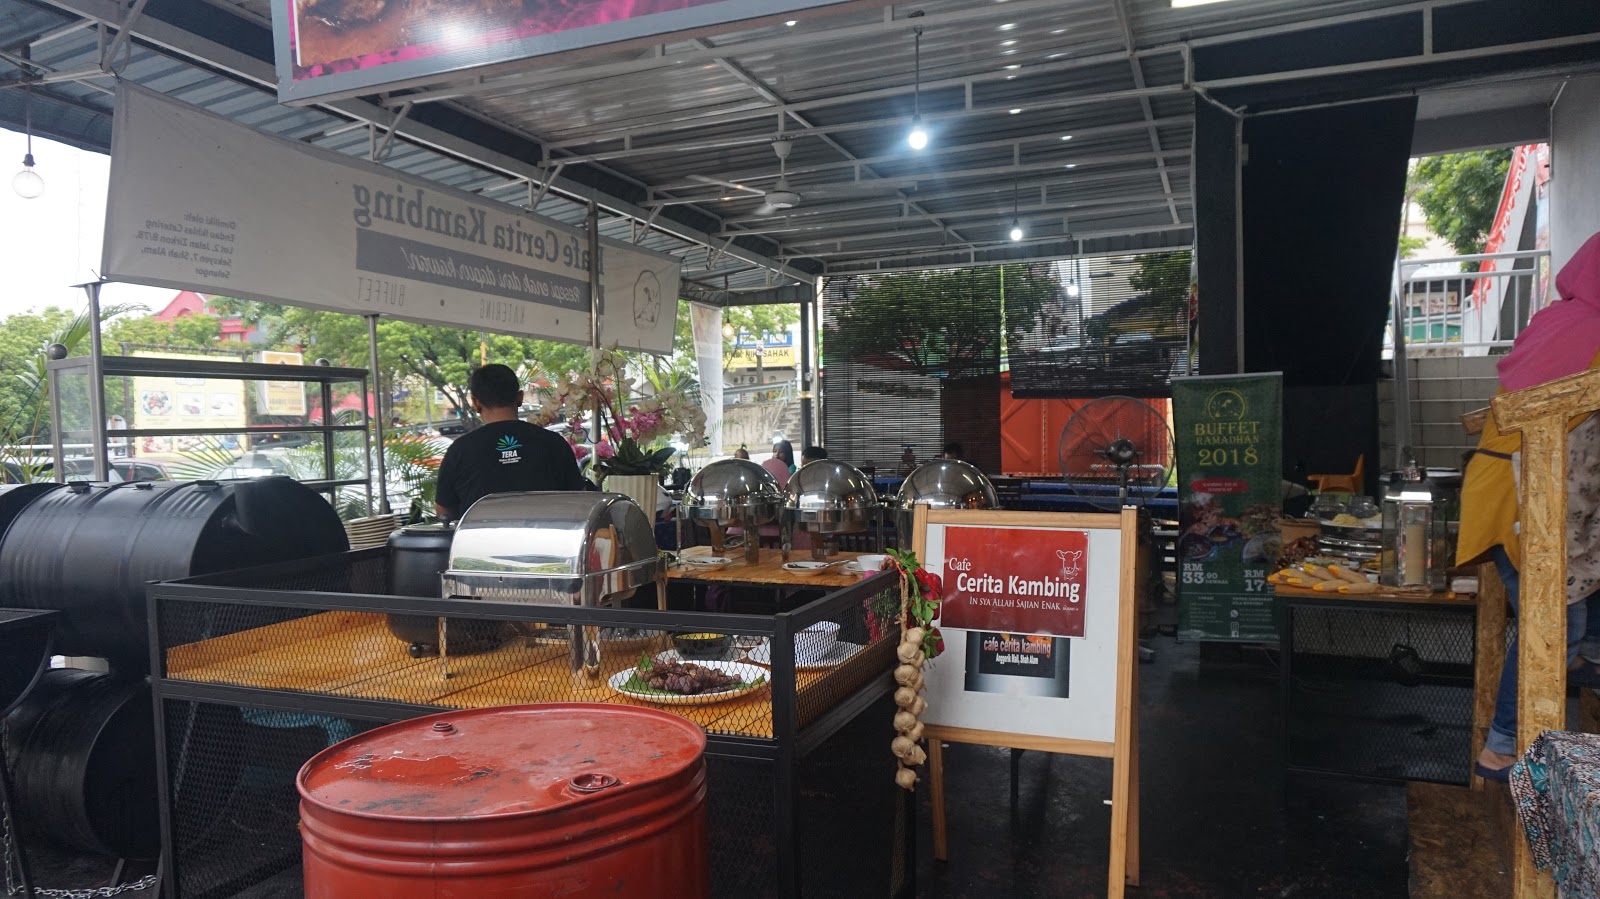 Berbuka dengan menu kambing di Cafe Cerita Kambing,Shah 